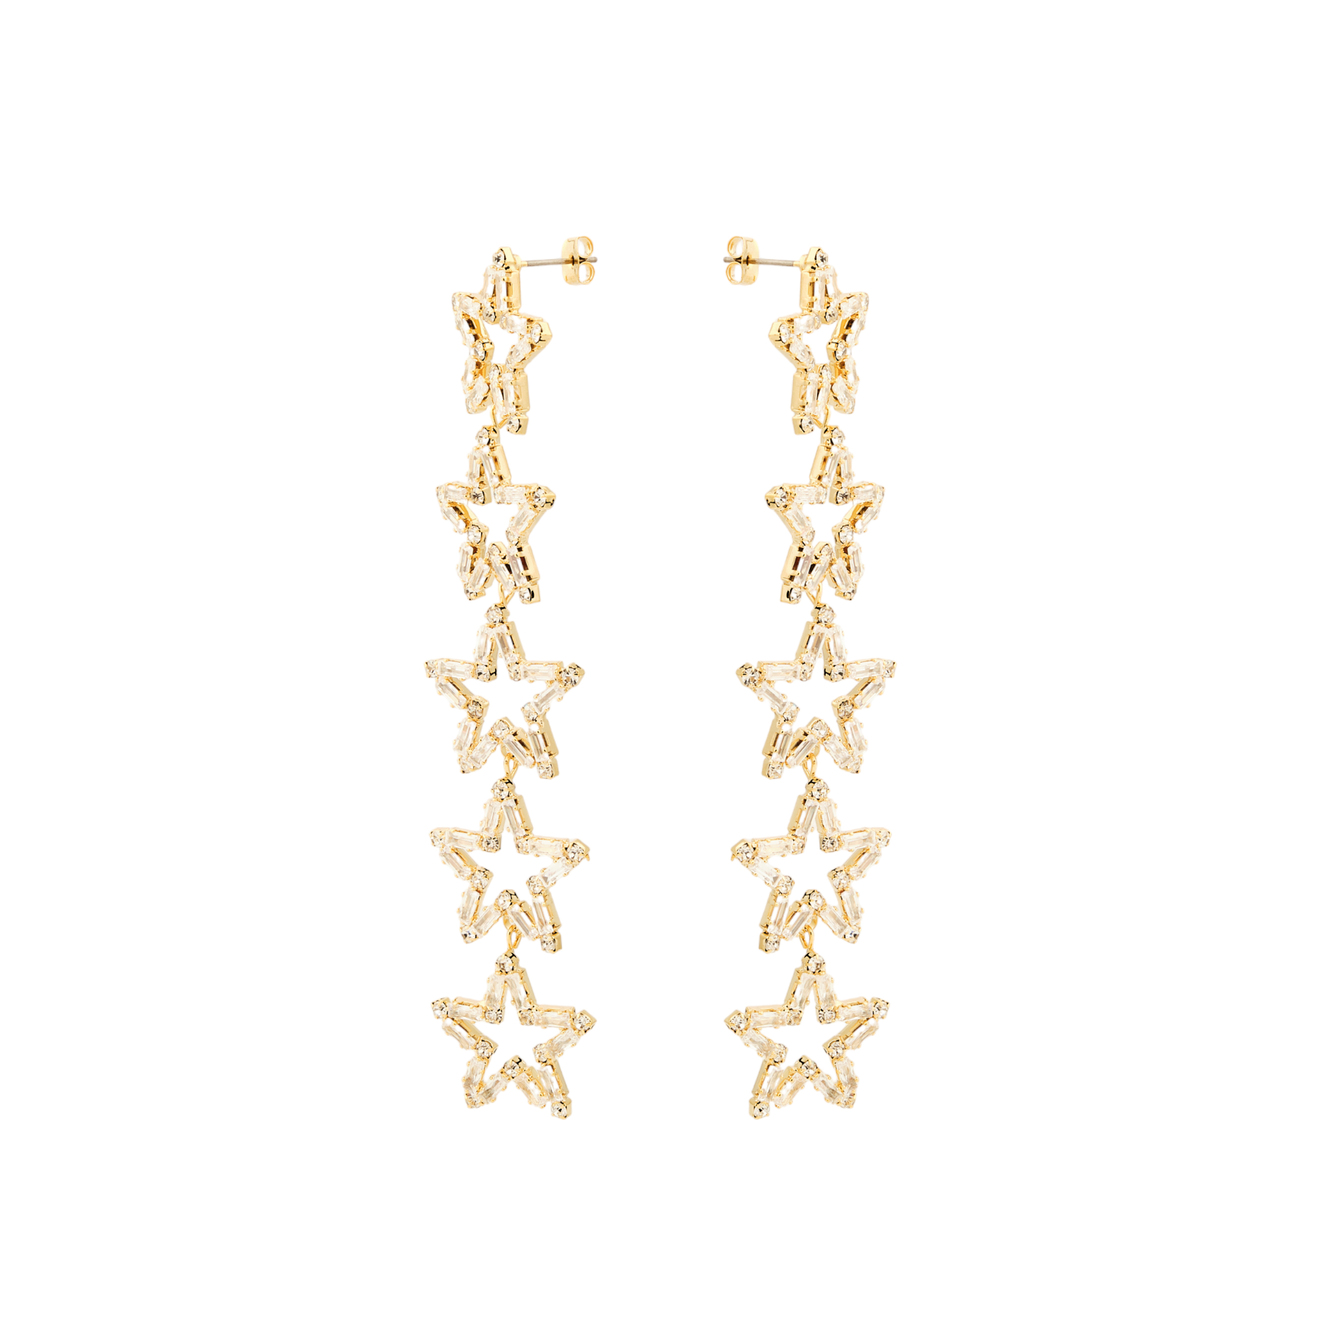 Herald Percy Золотистые длинные серьги с звездами с кристаллами herald percy золотистые длинные серьги бантики с кристаллами